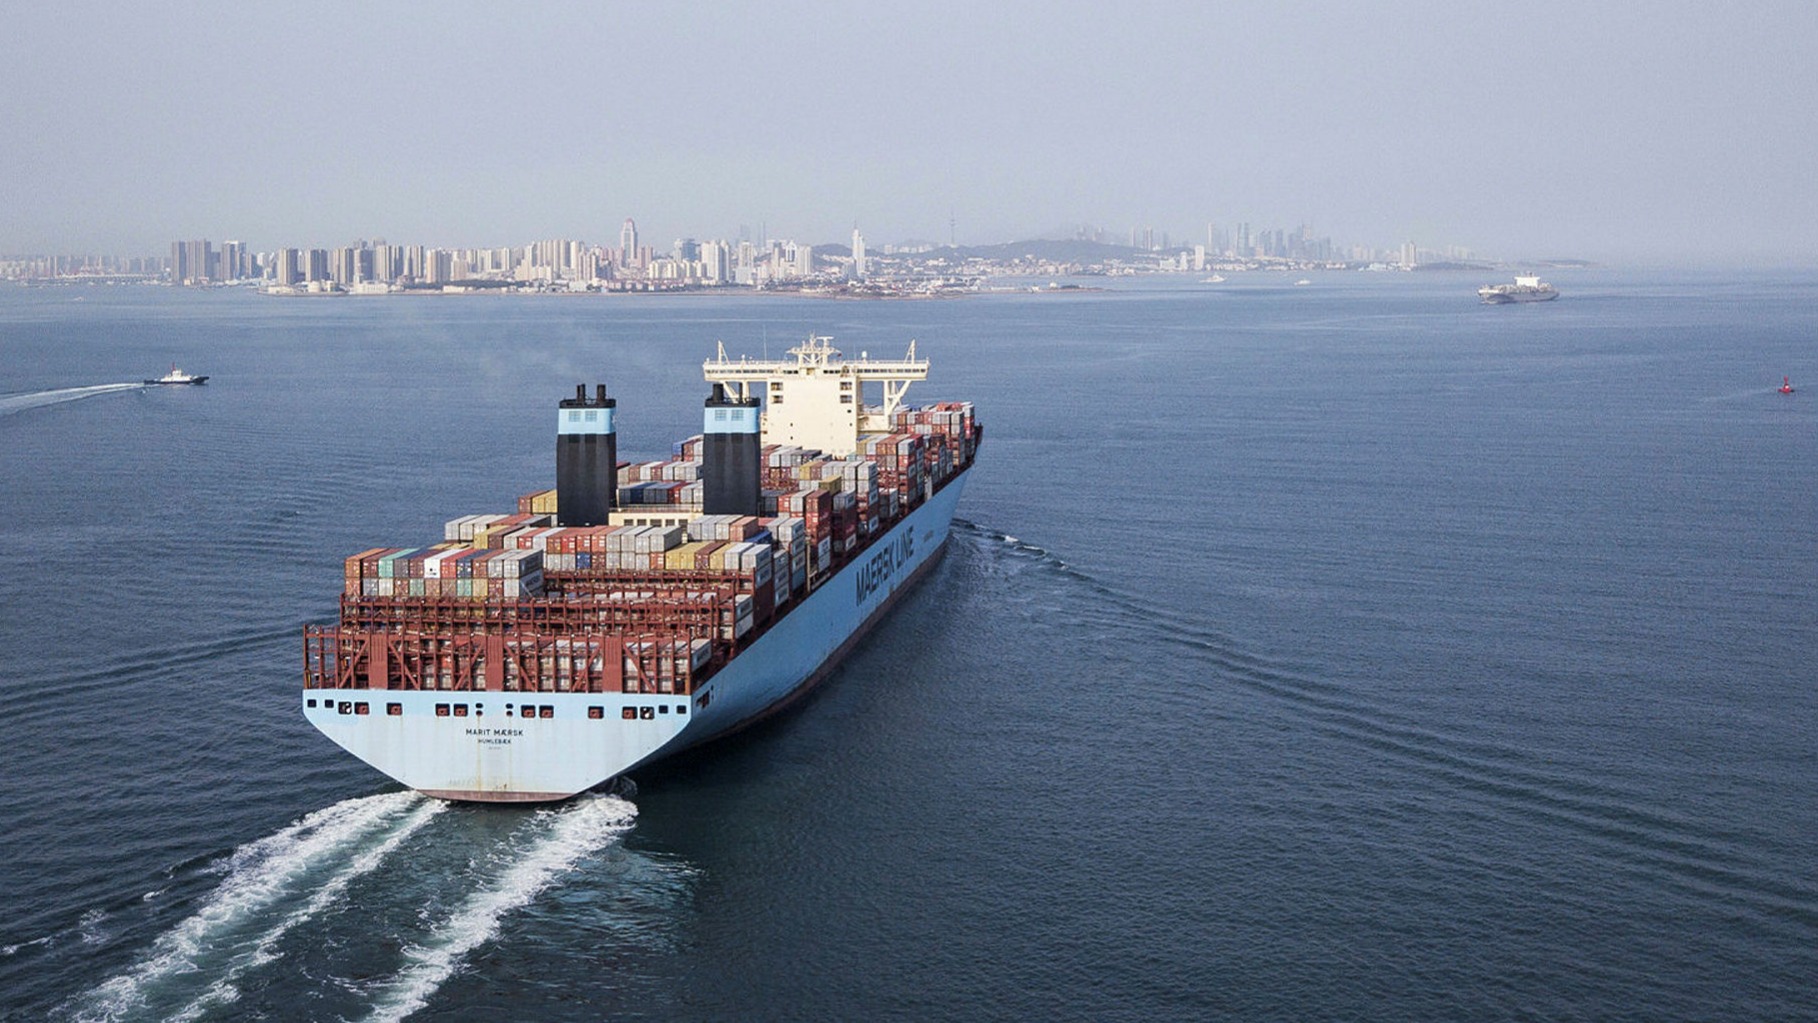 بهبود عملکرد مالی بزرگترین کشتیرانی دنیا در سه ماهه نخست ۲۰۲۰/ آمادگی برای روزهای سخت پیش رو